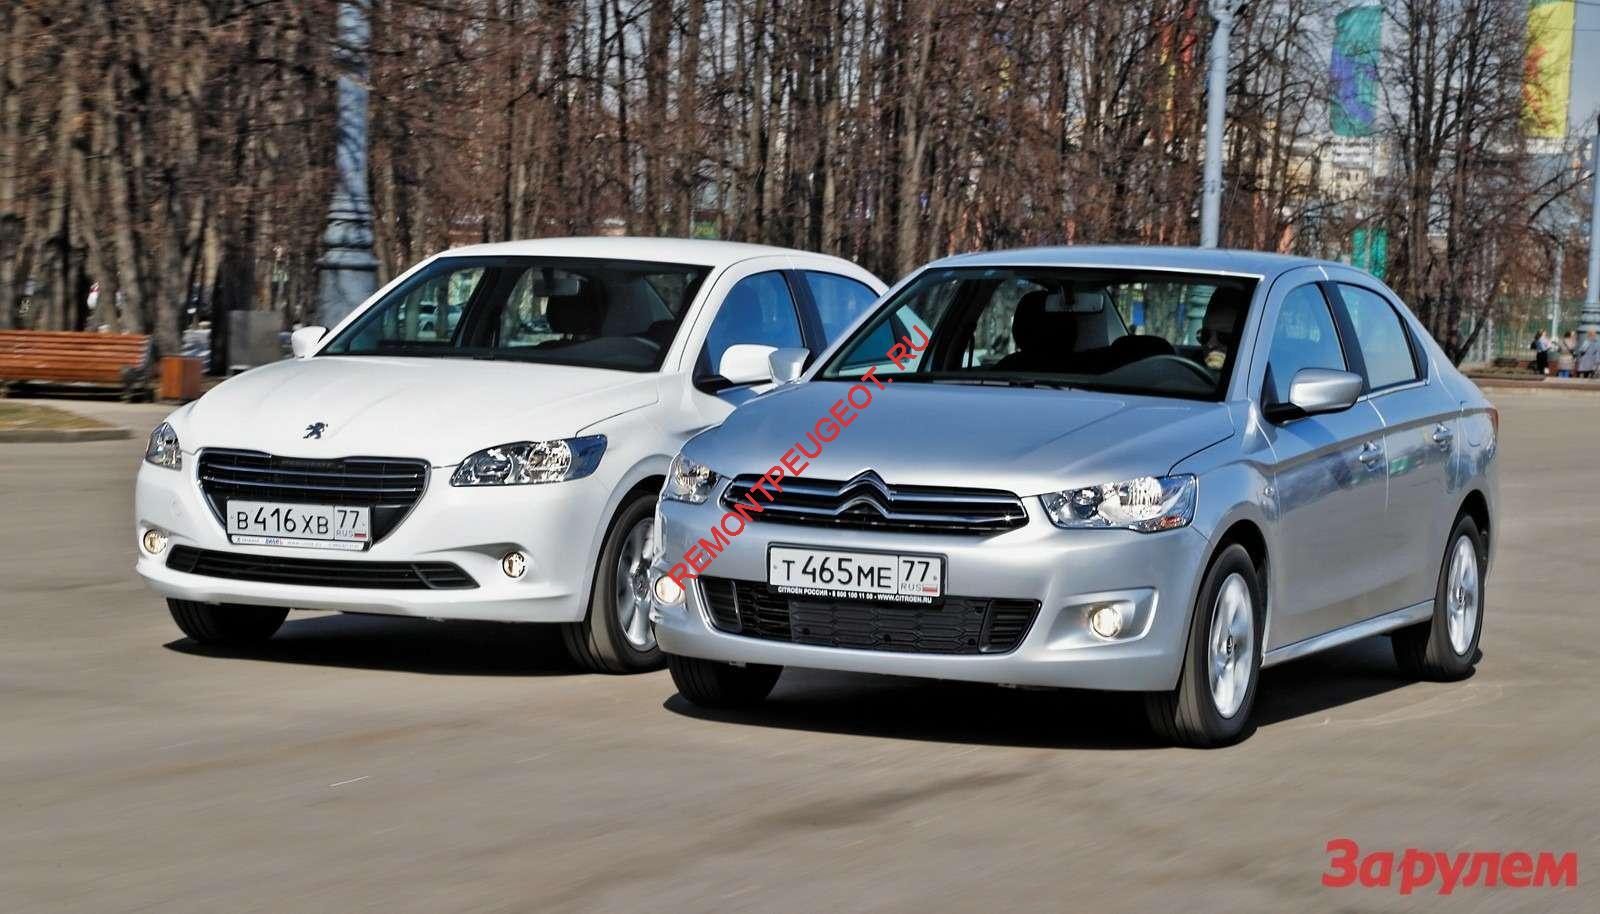 Подержанные Citroën C-Elysee и Peugeot 301 (2012-2020) &#8211; бюджетно, то есть дешево и хорошо